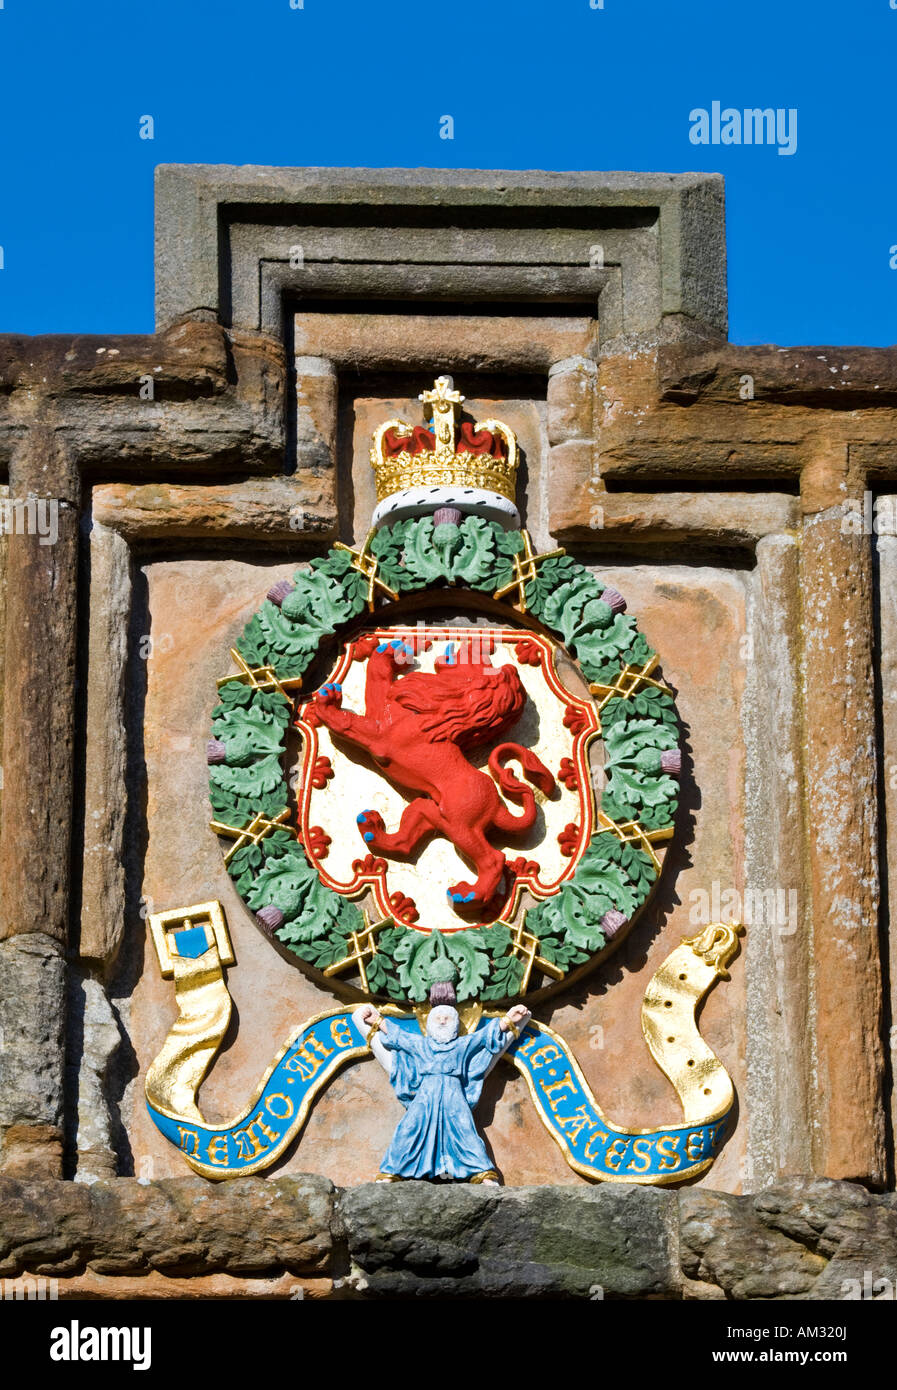 Ce bras royal écossais peint de couleurs vives, est sur le mur au-dessus de l'entrée de Linlithgow Palace. Banque D'Images